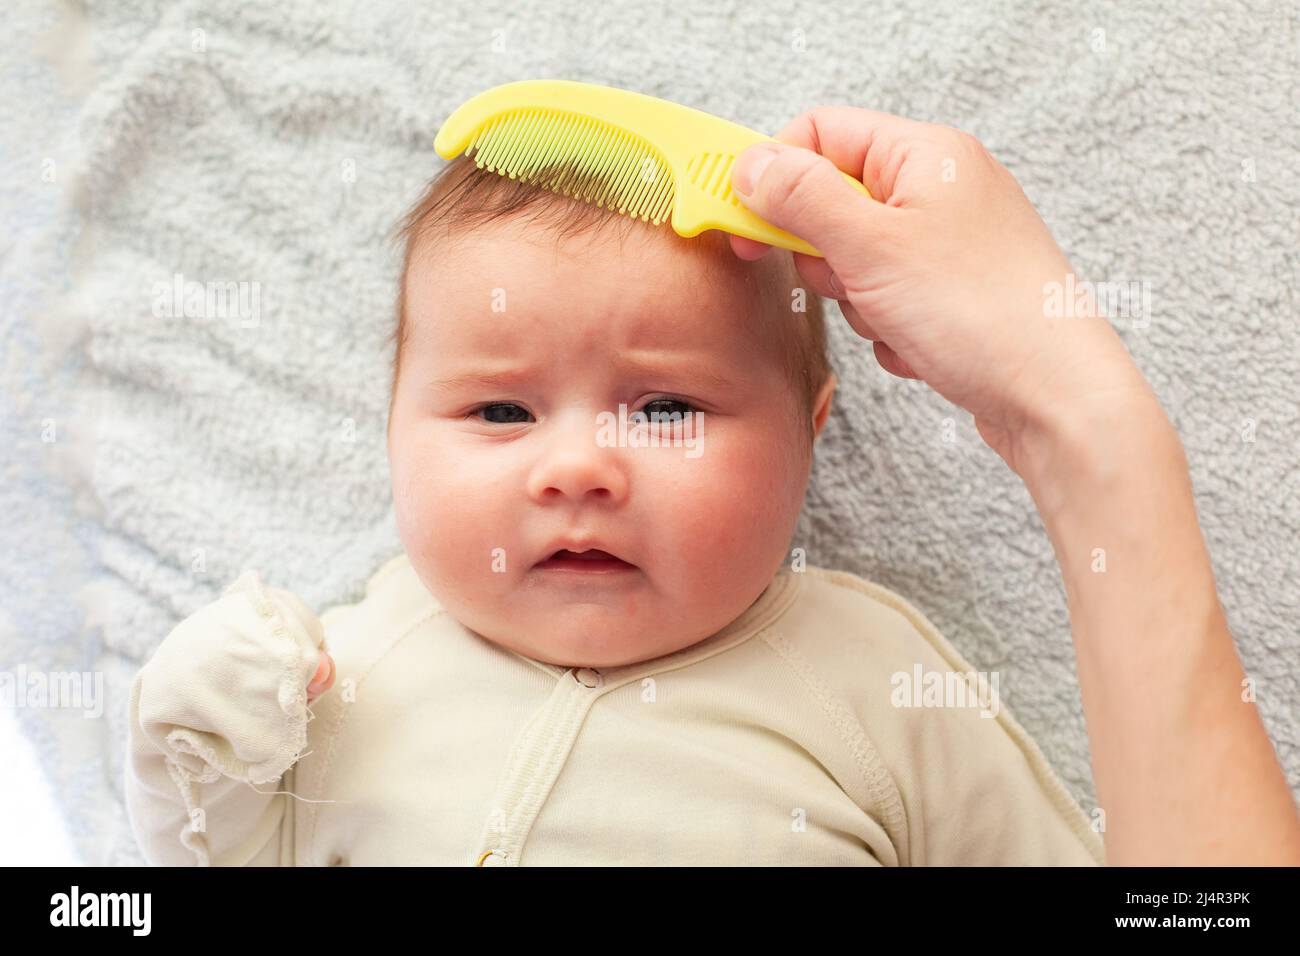 Cepillo De Mano Madre Recién Nacido Pelo De Bebé Imagen de archivo - Imagen  de bebé, limpio: 277491737